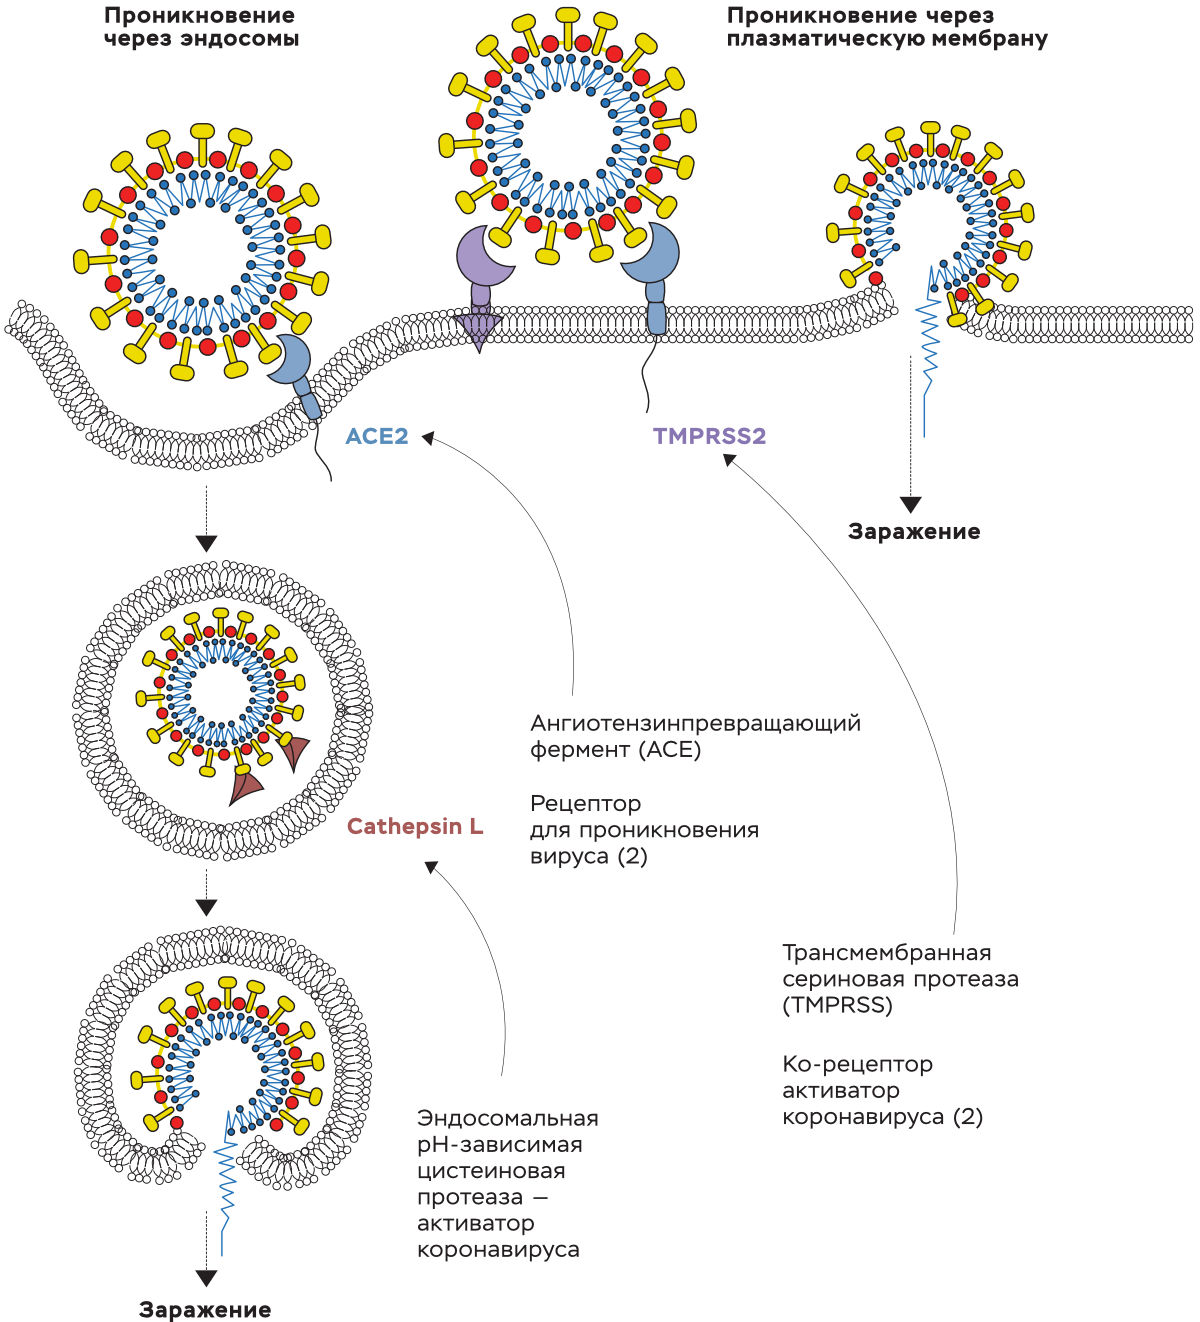 Пути, используемые SARS-CoV-2 для проникновения в клетки-мишени SARS-CoV-2: 1) связывание с клеточным рецептором ACE2 может привести к поглощению вирионов в эндосомы, где вирус активируется белком Сathepsin L; 2) вирус может быть активирован TMPRSS2 на поверхности клетки (или близко к ней), что приводит к слиянию вирусной мембраны с плазматической мембраной